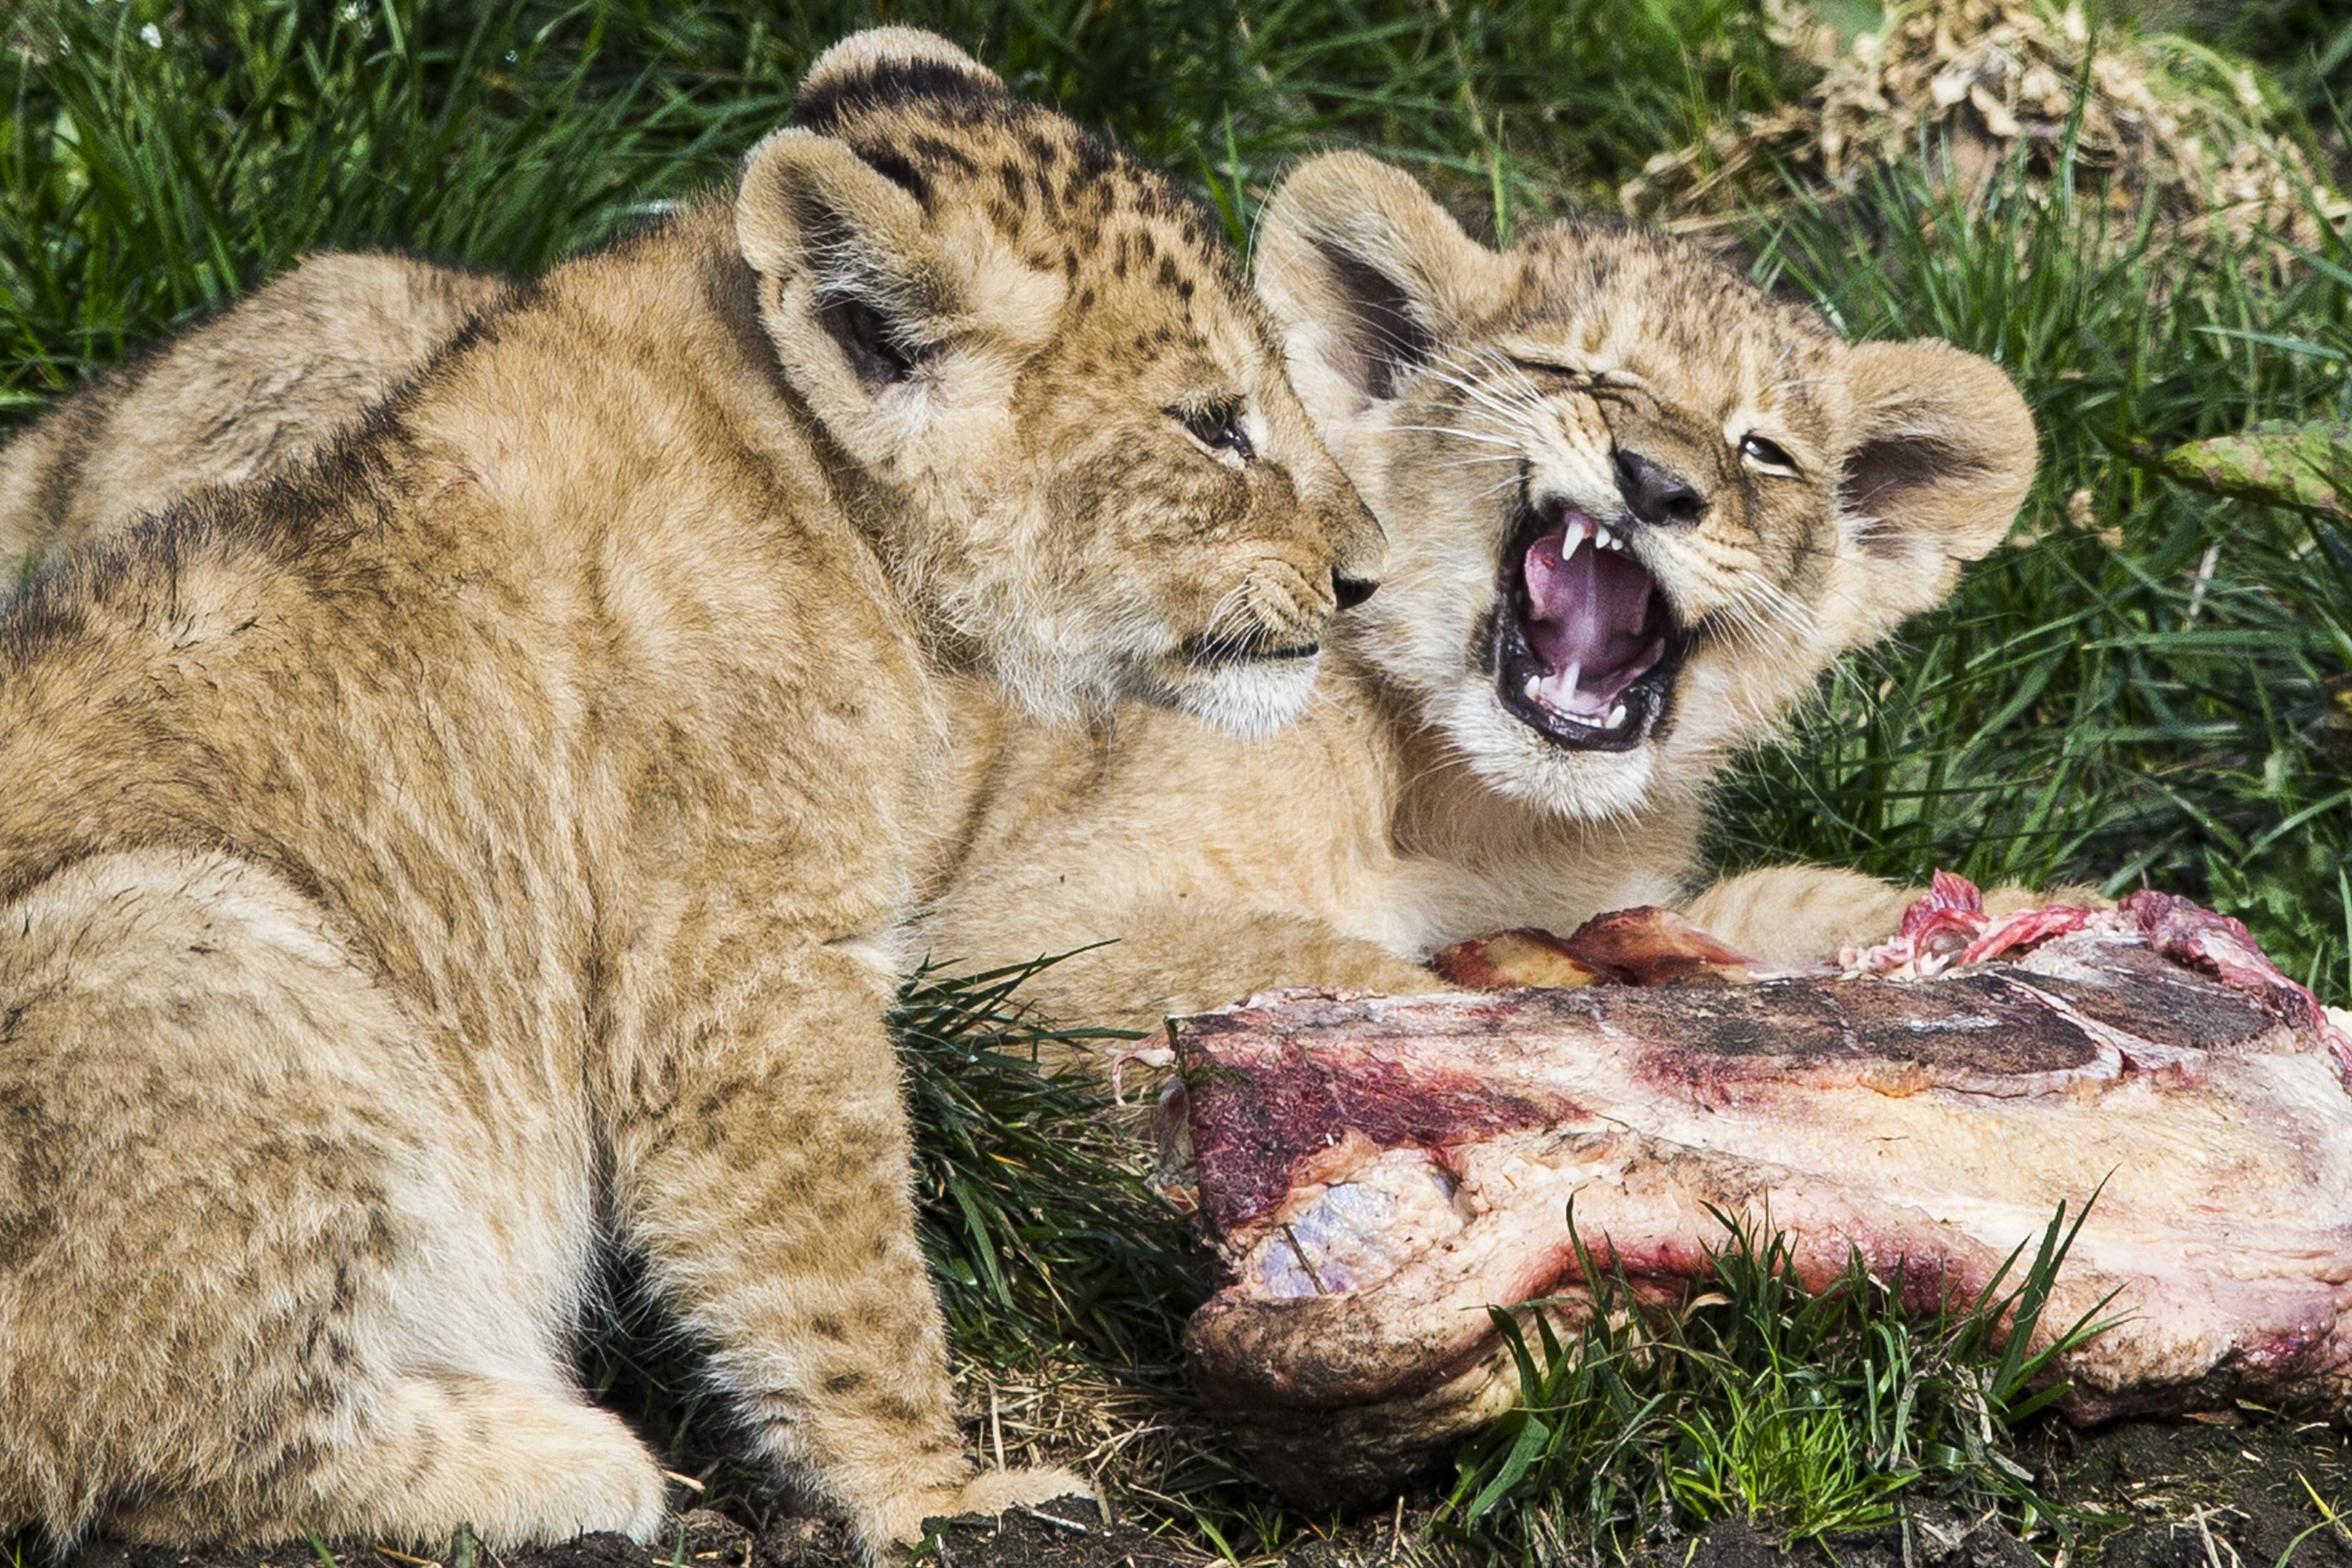 3月30日,在荷兰埃门野生动物园,两只小狮子在户外活动